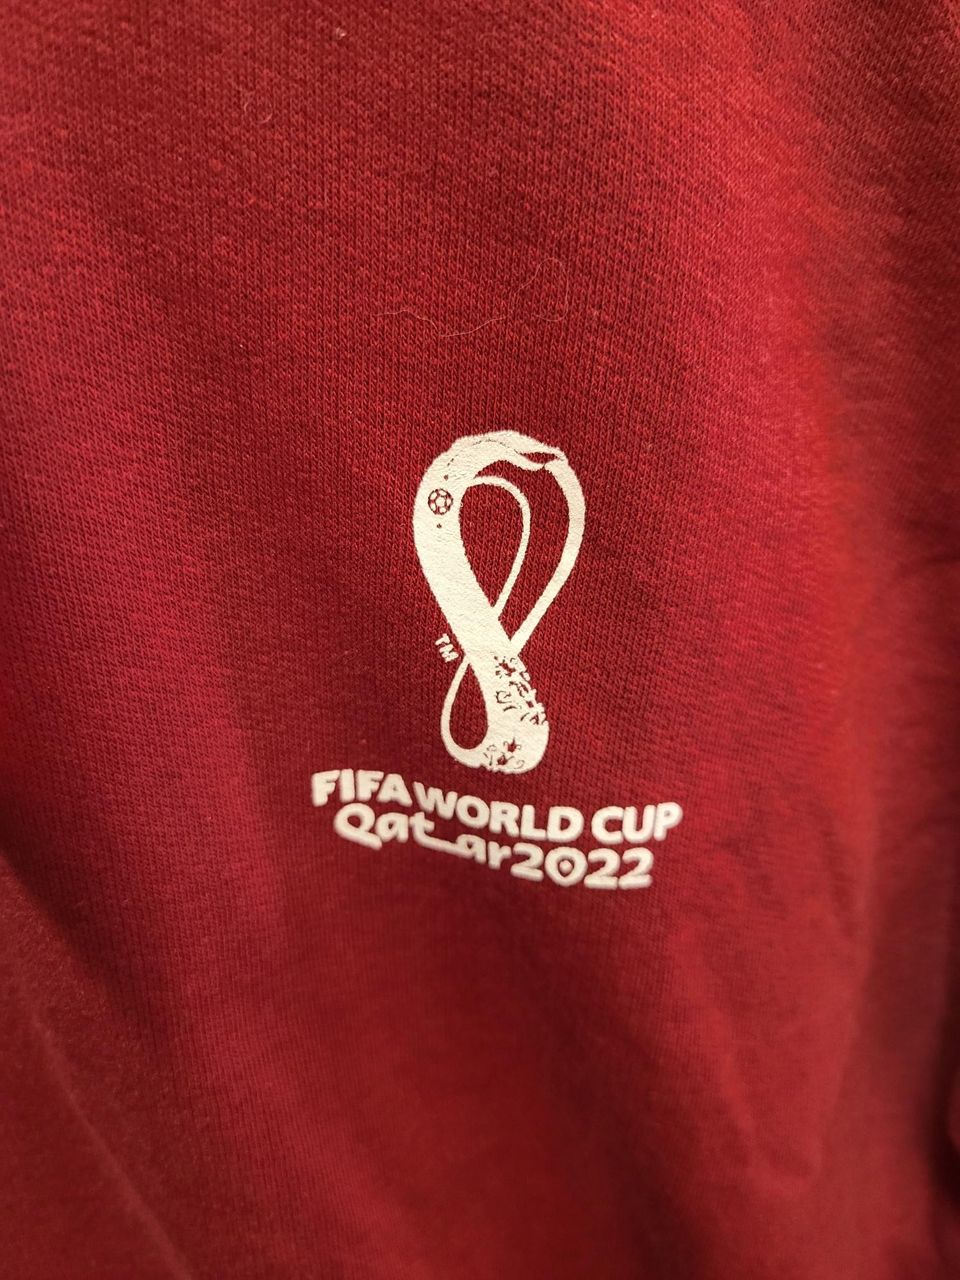 FIFA World Cup Qatar 2022 huppari